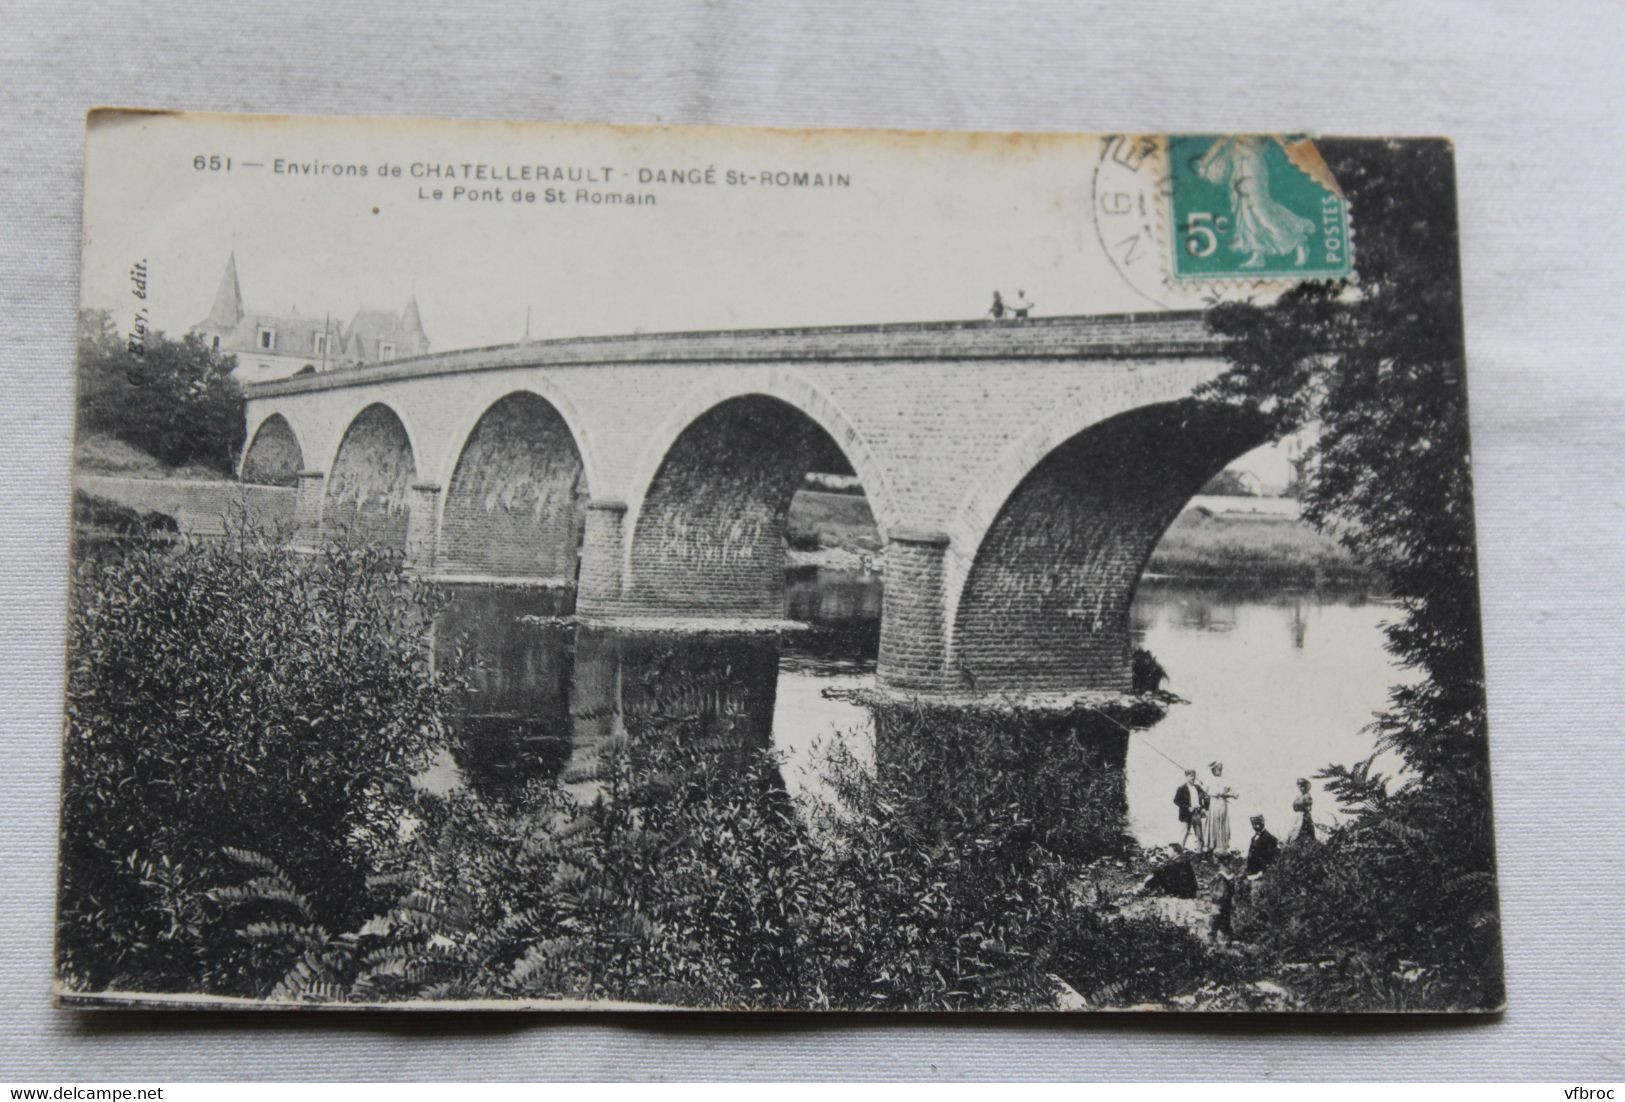 Cpa 1910, Dangé Saint Romain, Le Pont De St Romain, Vienne 86 - Dange Saint Romain